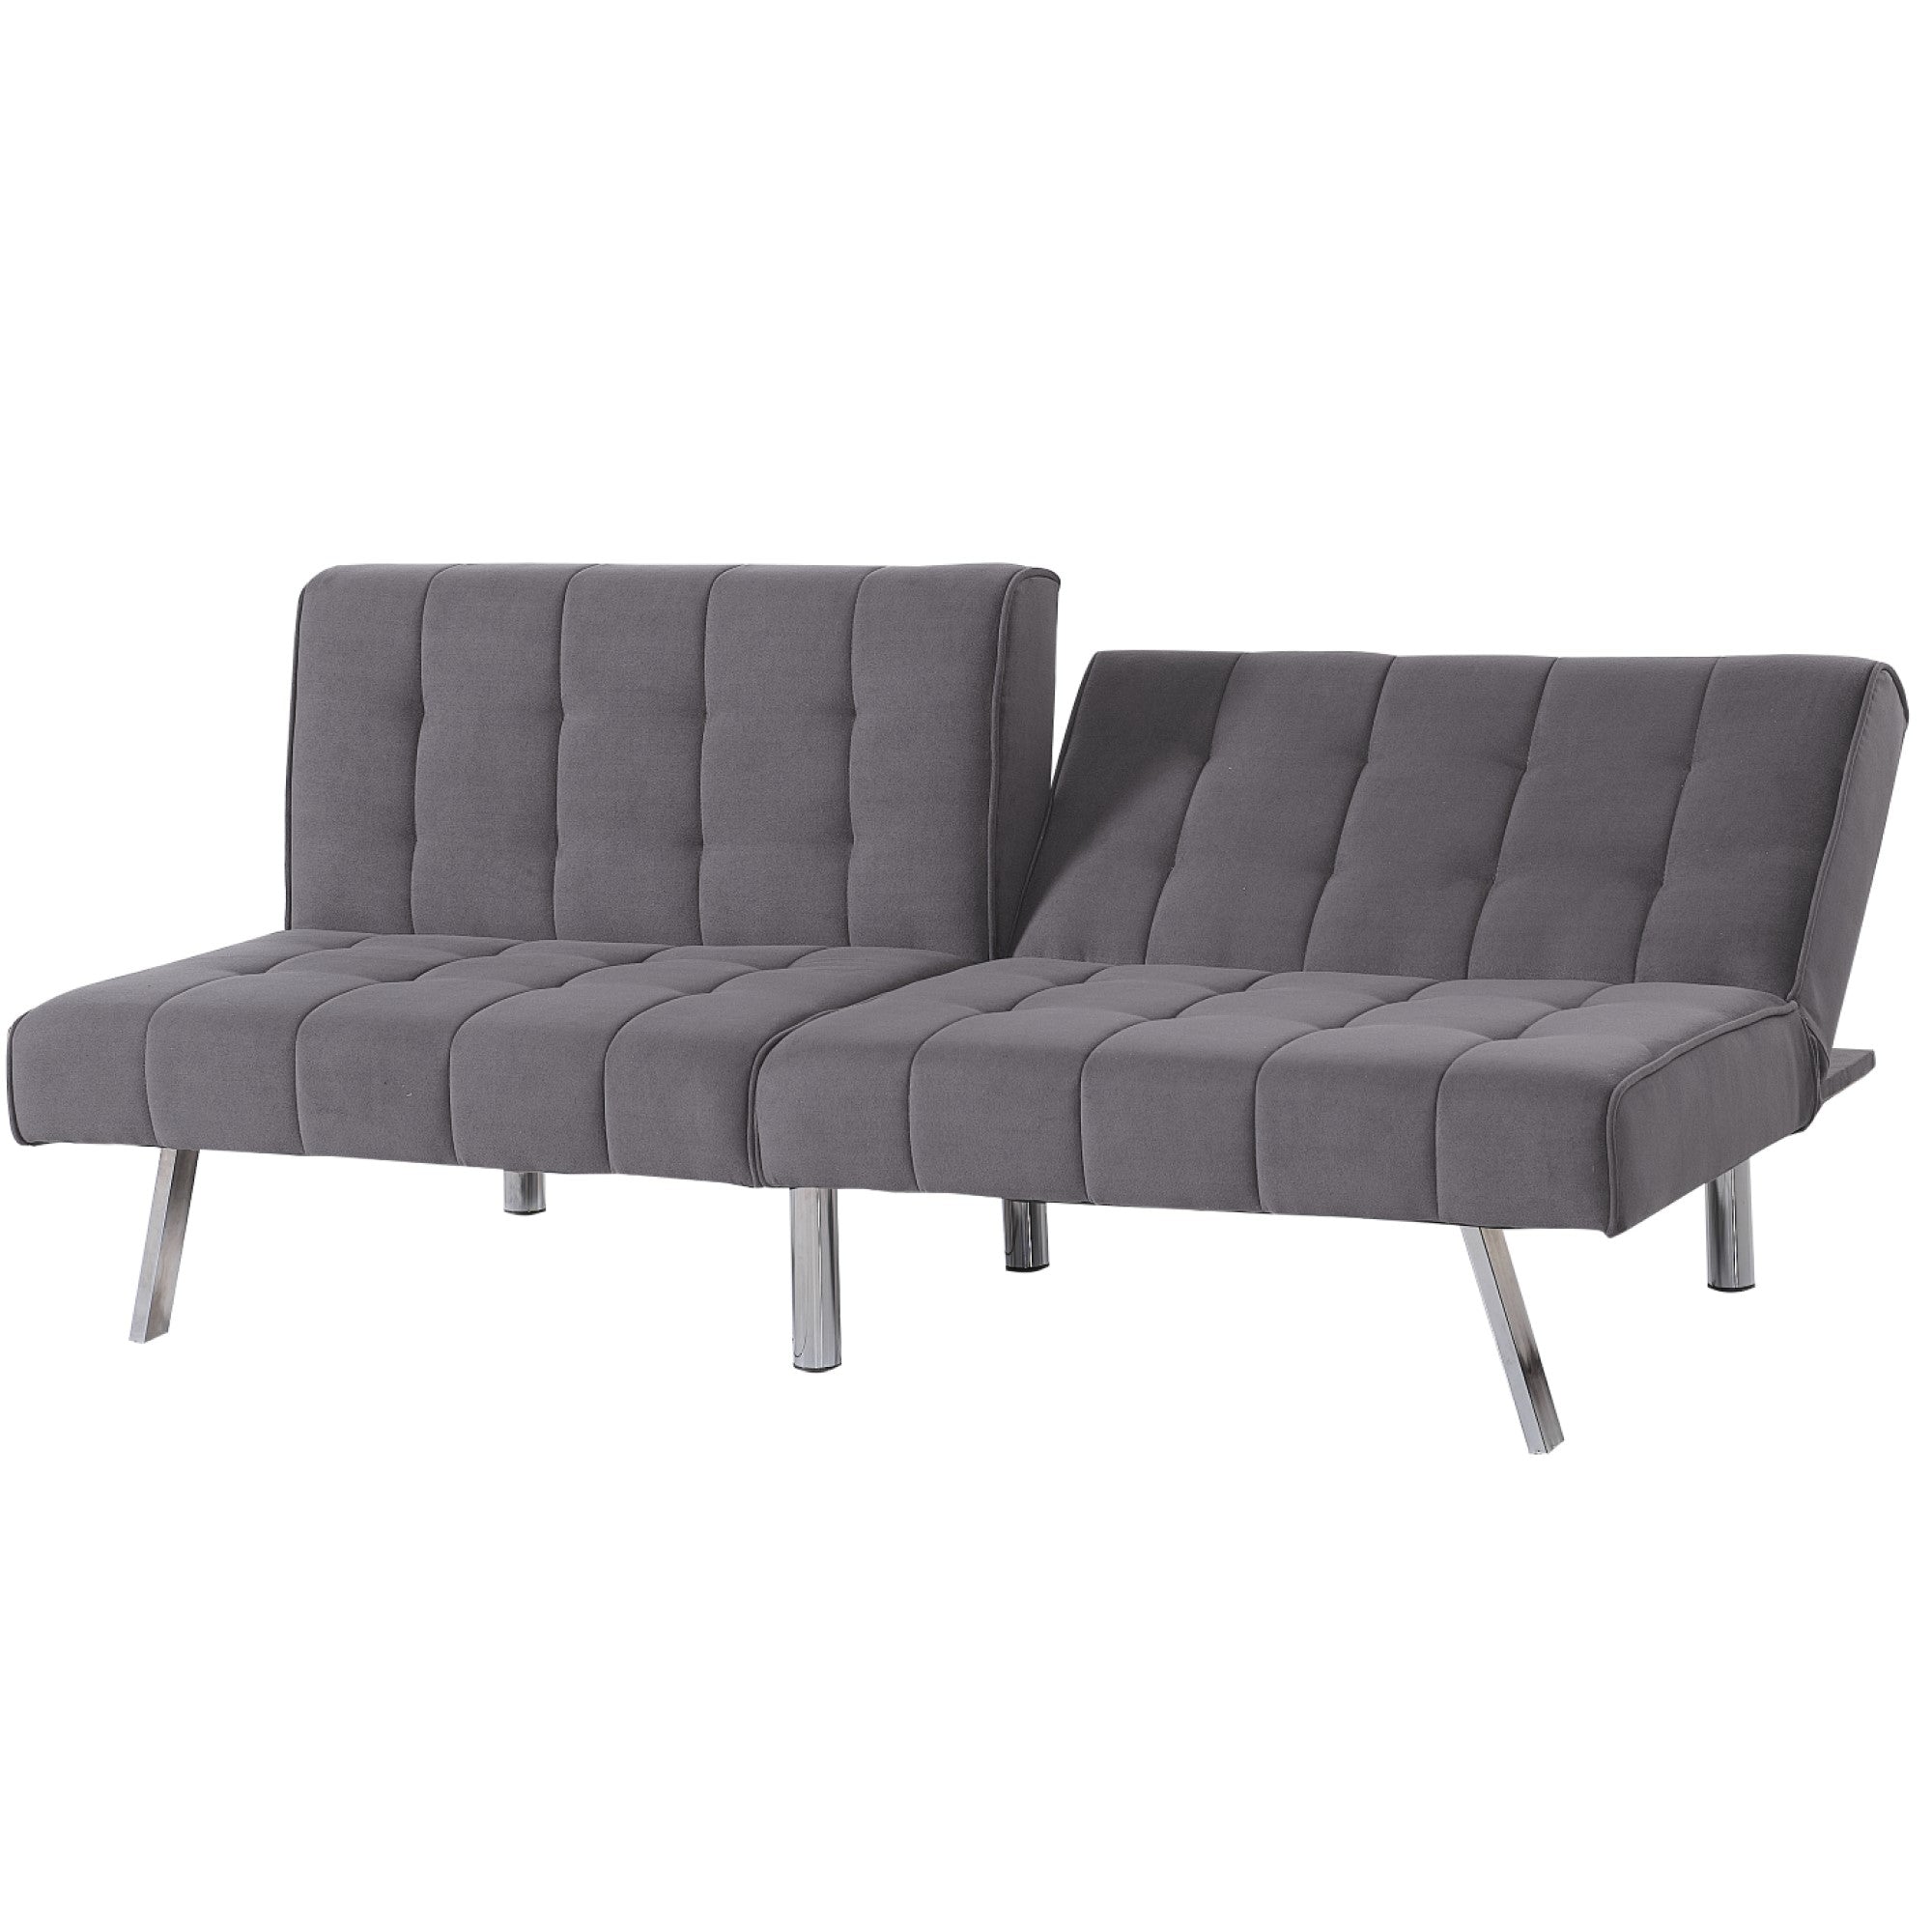 ViscoLogic Rhythm Convertible 3-Seater Velvet Upholstered Living Room Futon Sofa/Sofa Bed